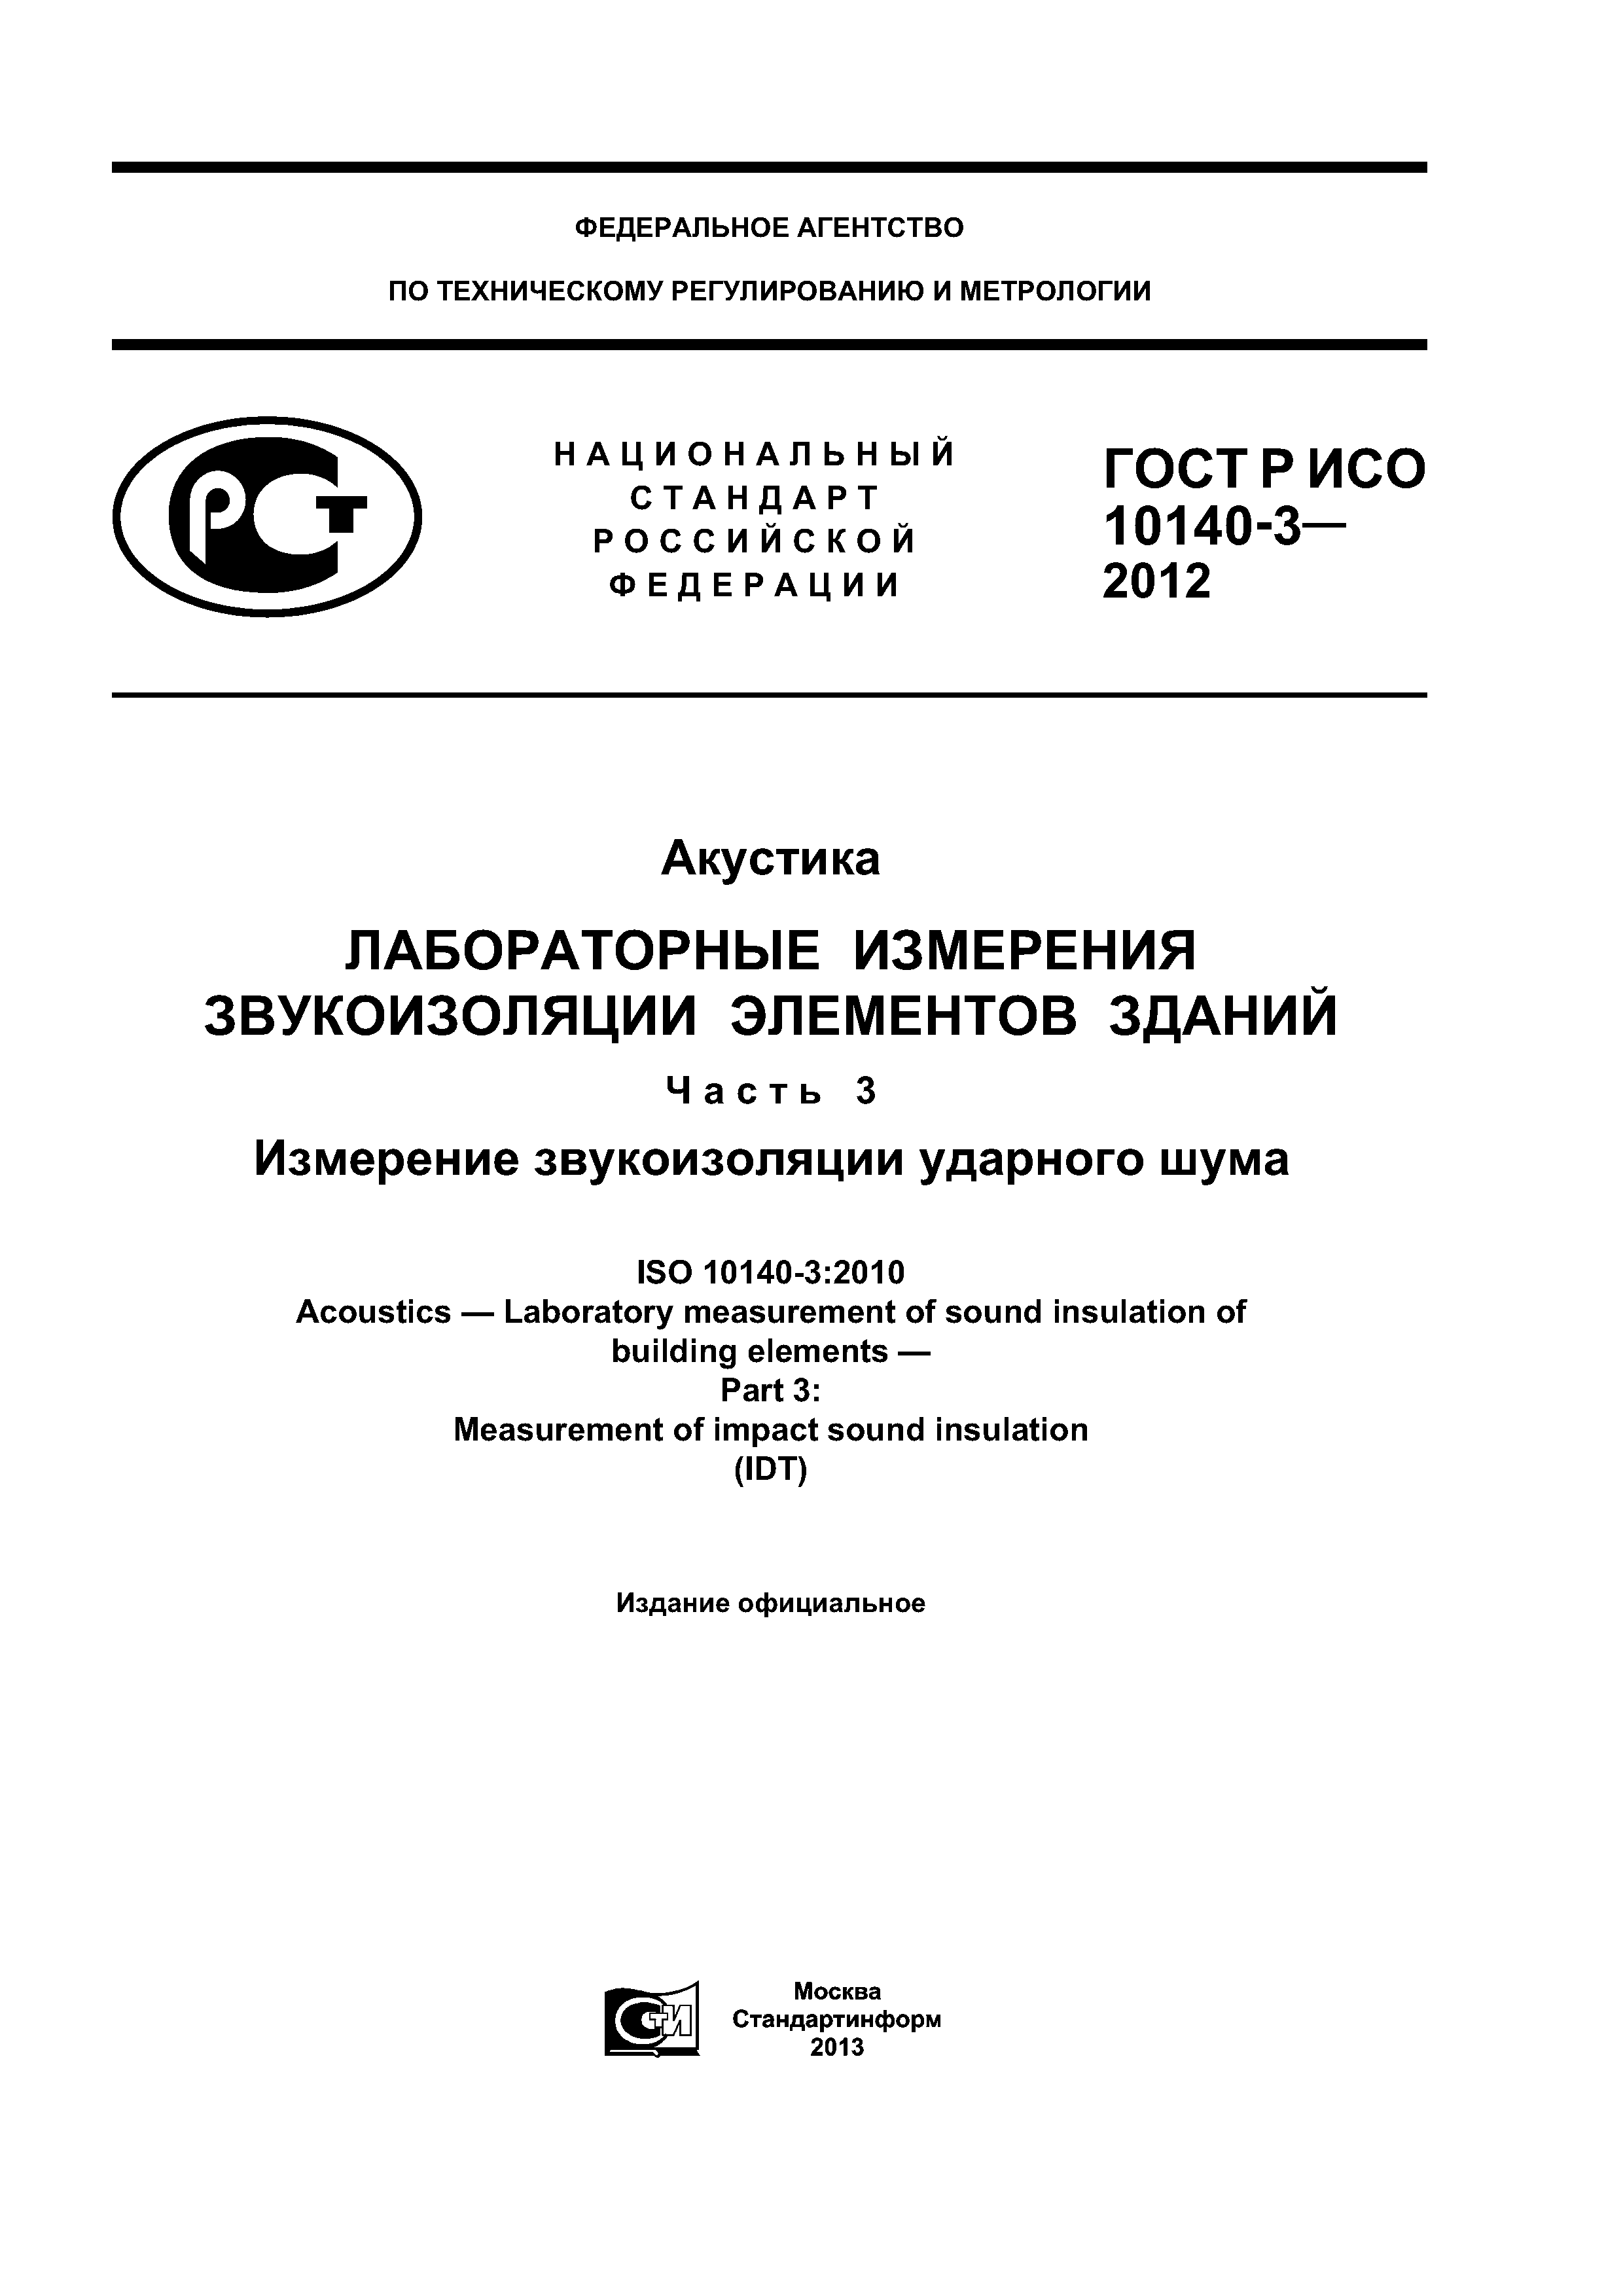 ГОСТ Р ИСО 10140-3-2012